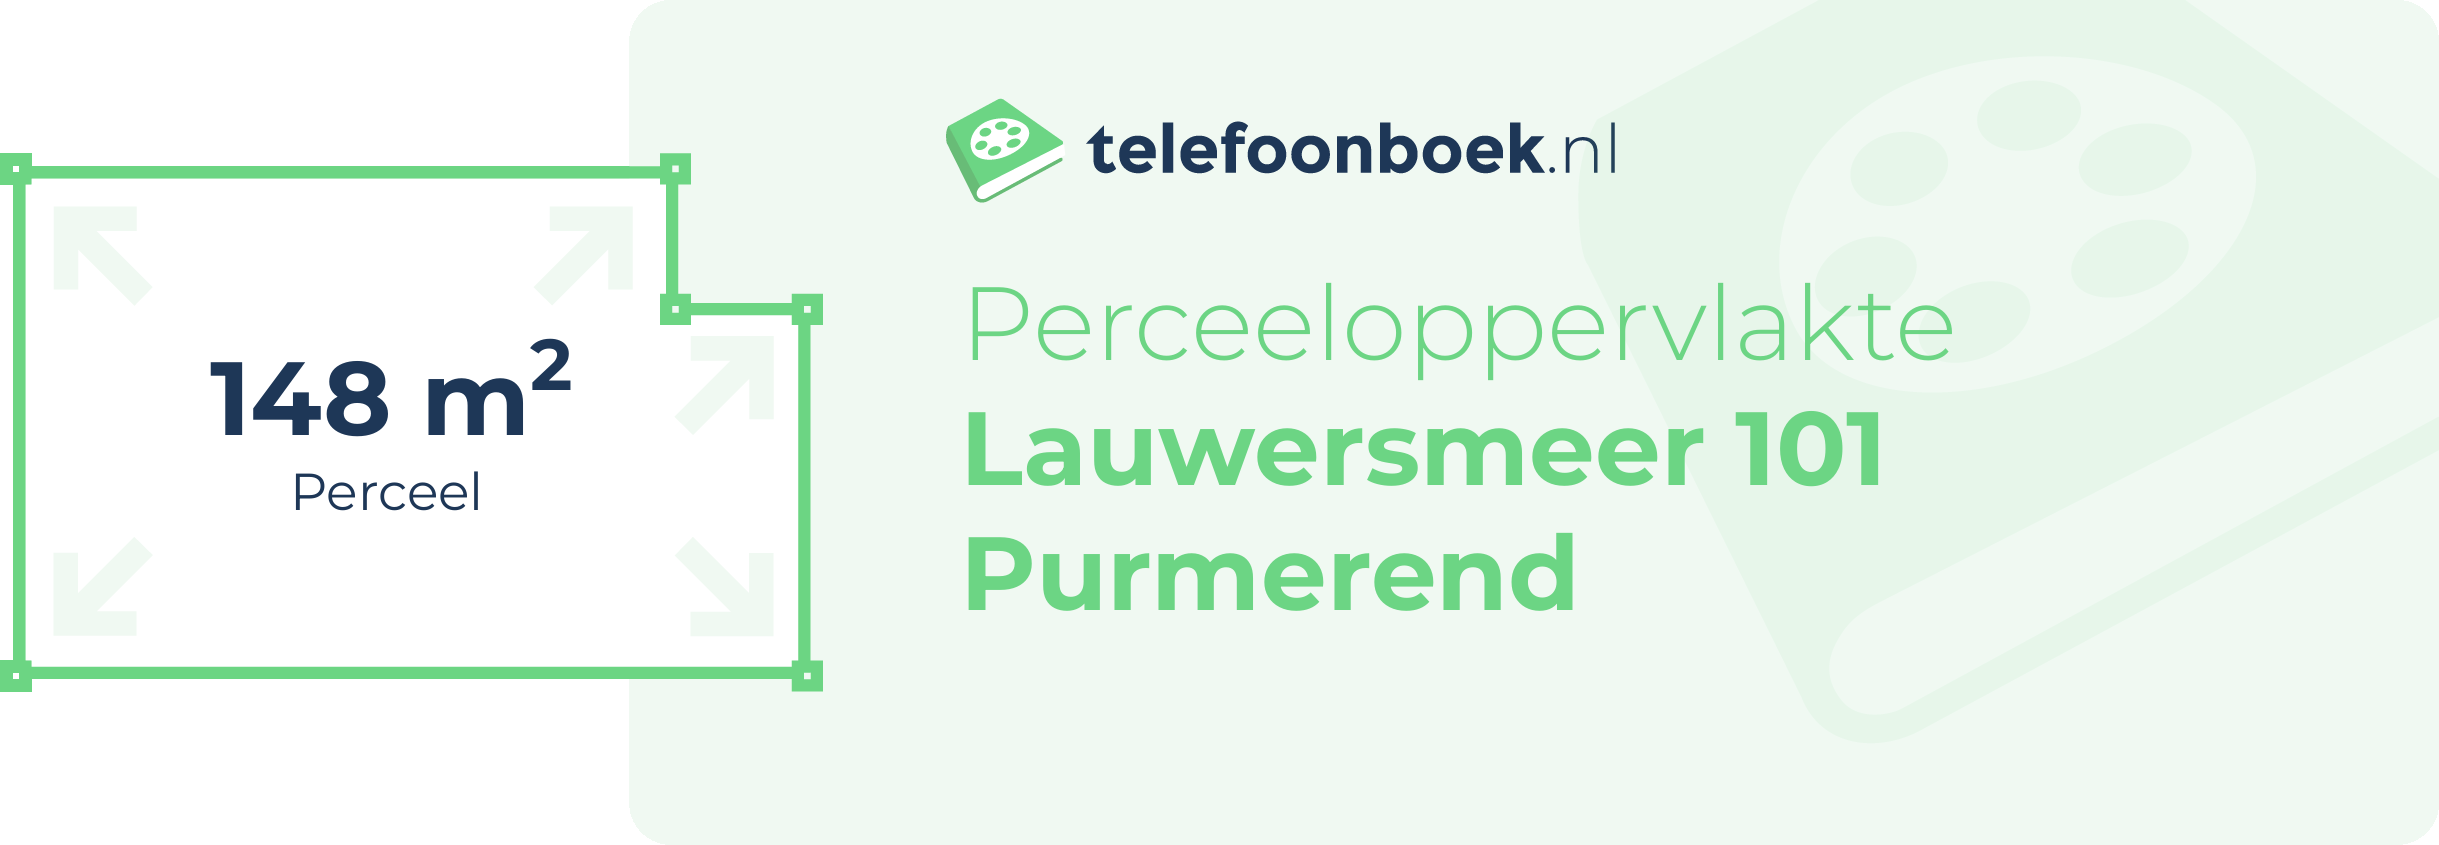 Perceeloppervlakte Lauwersmeer 101 Purmerend